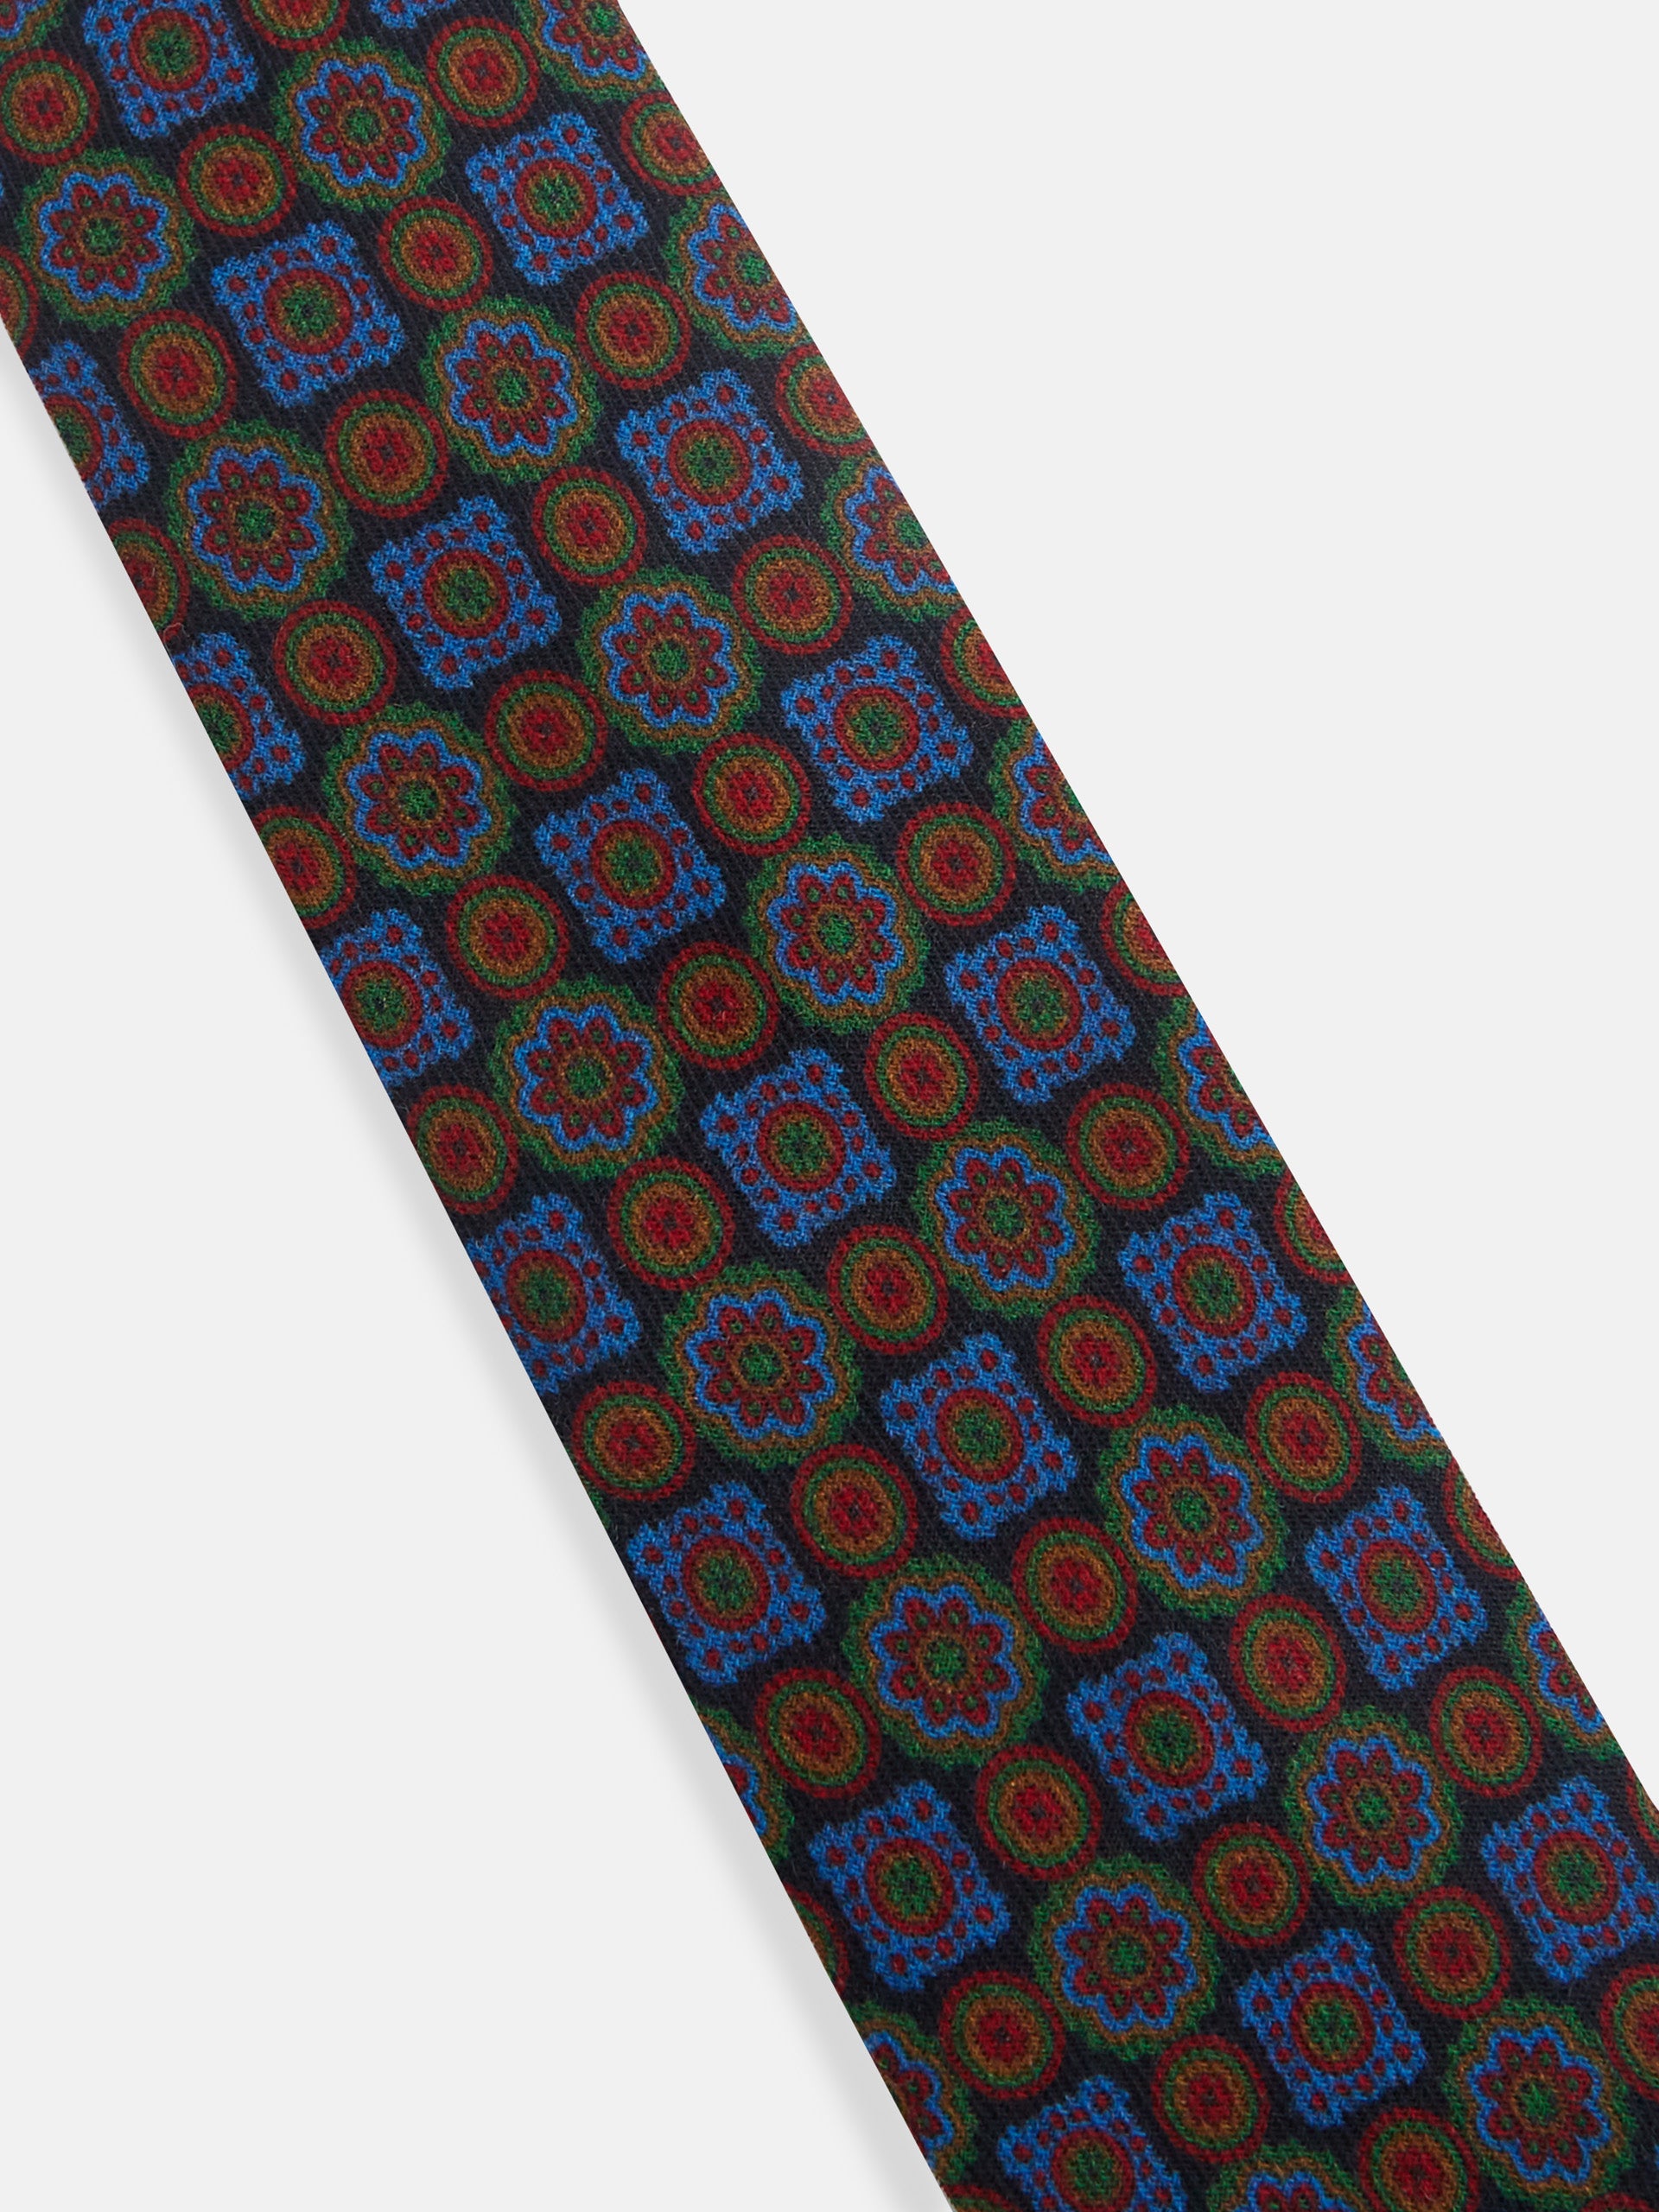 Corbata de hombre con patrón de estructura en azul marino